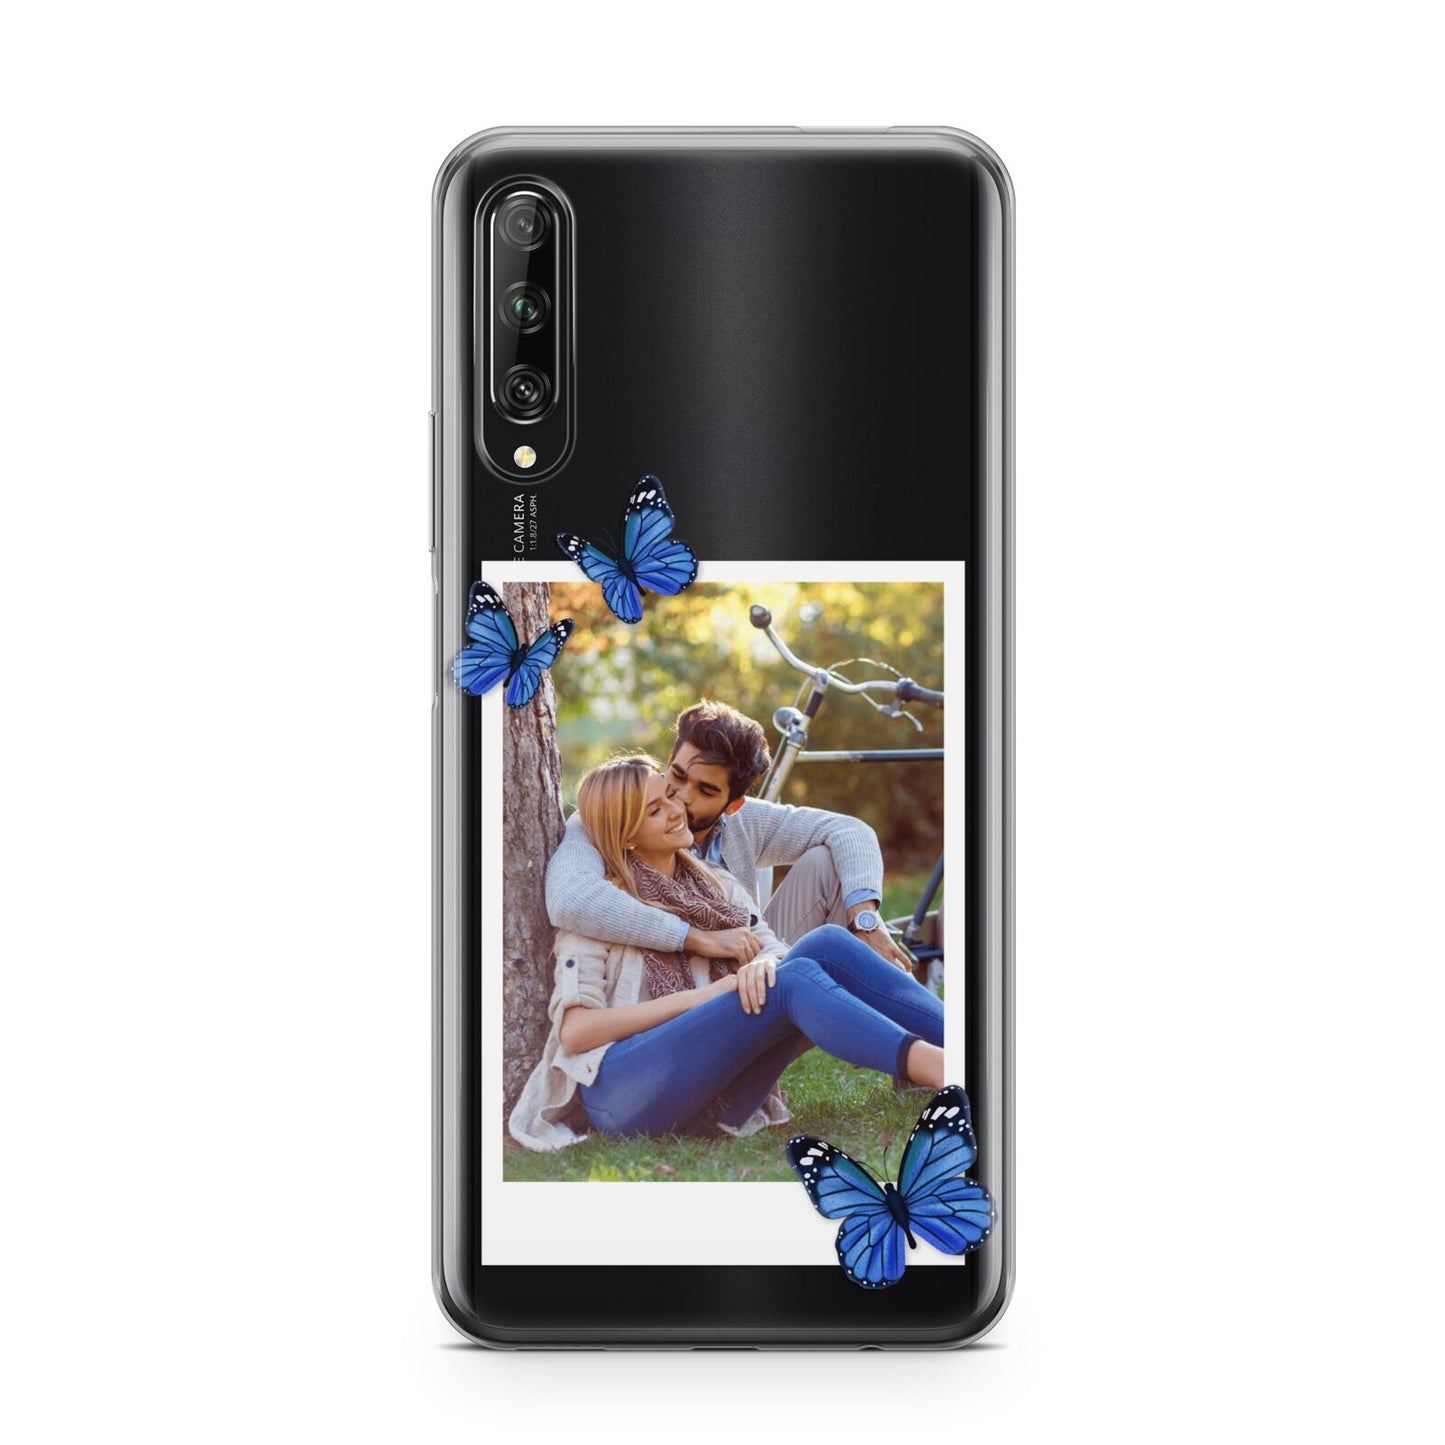 Polaroid Photo Huawei P Smart Pro 2019